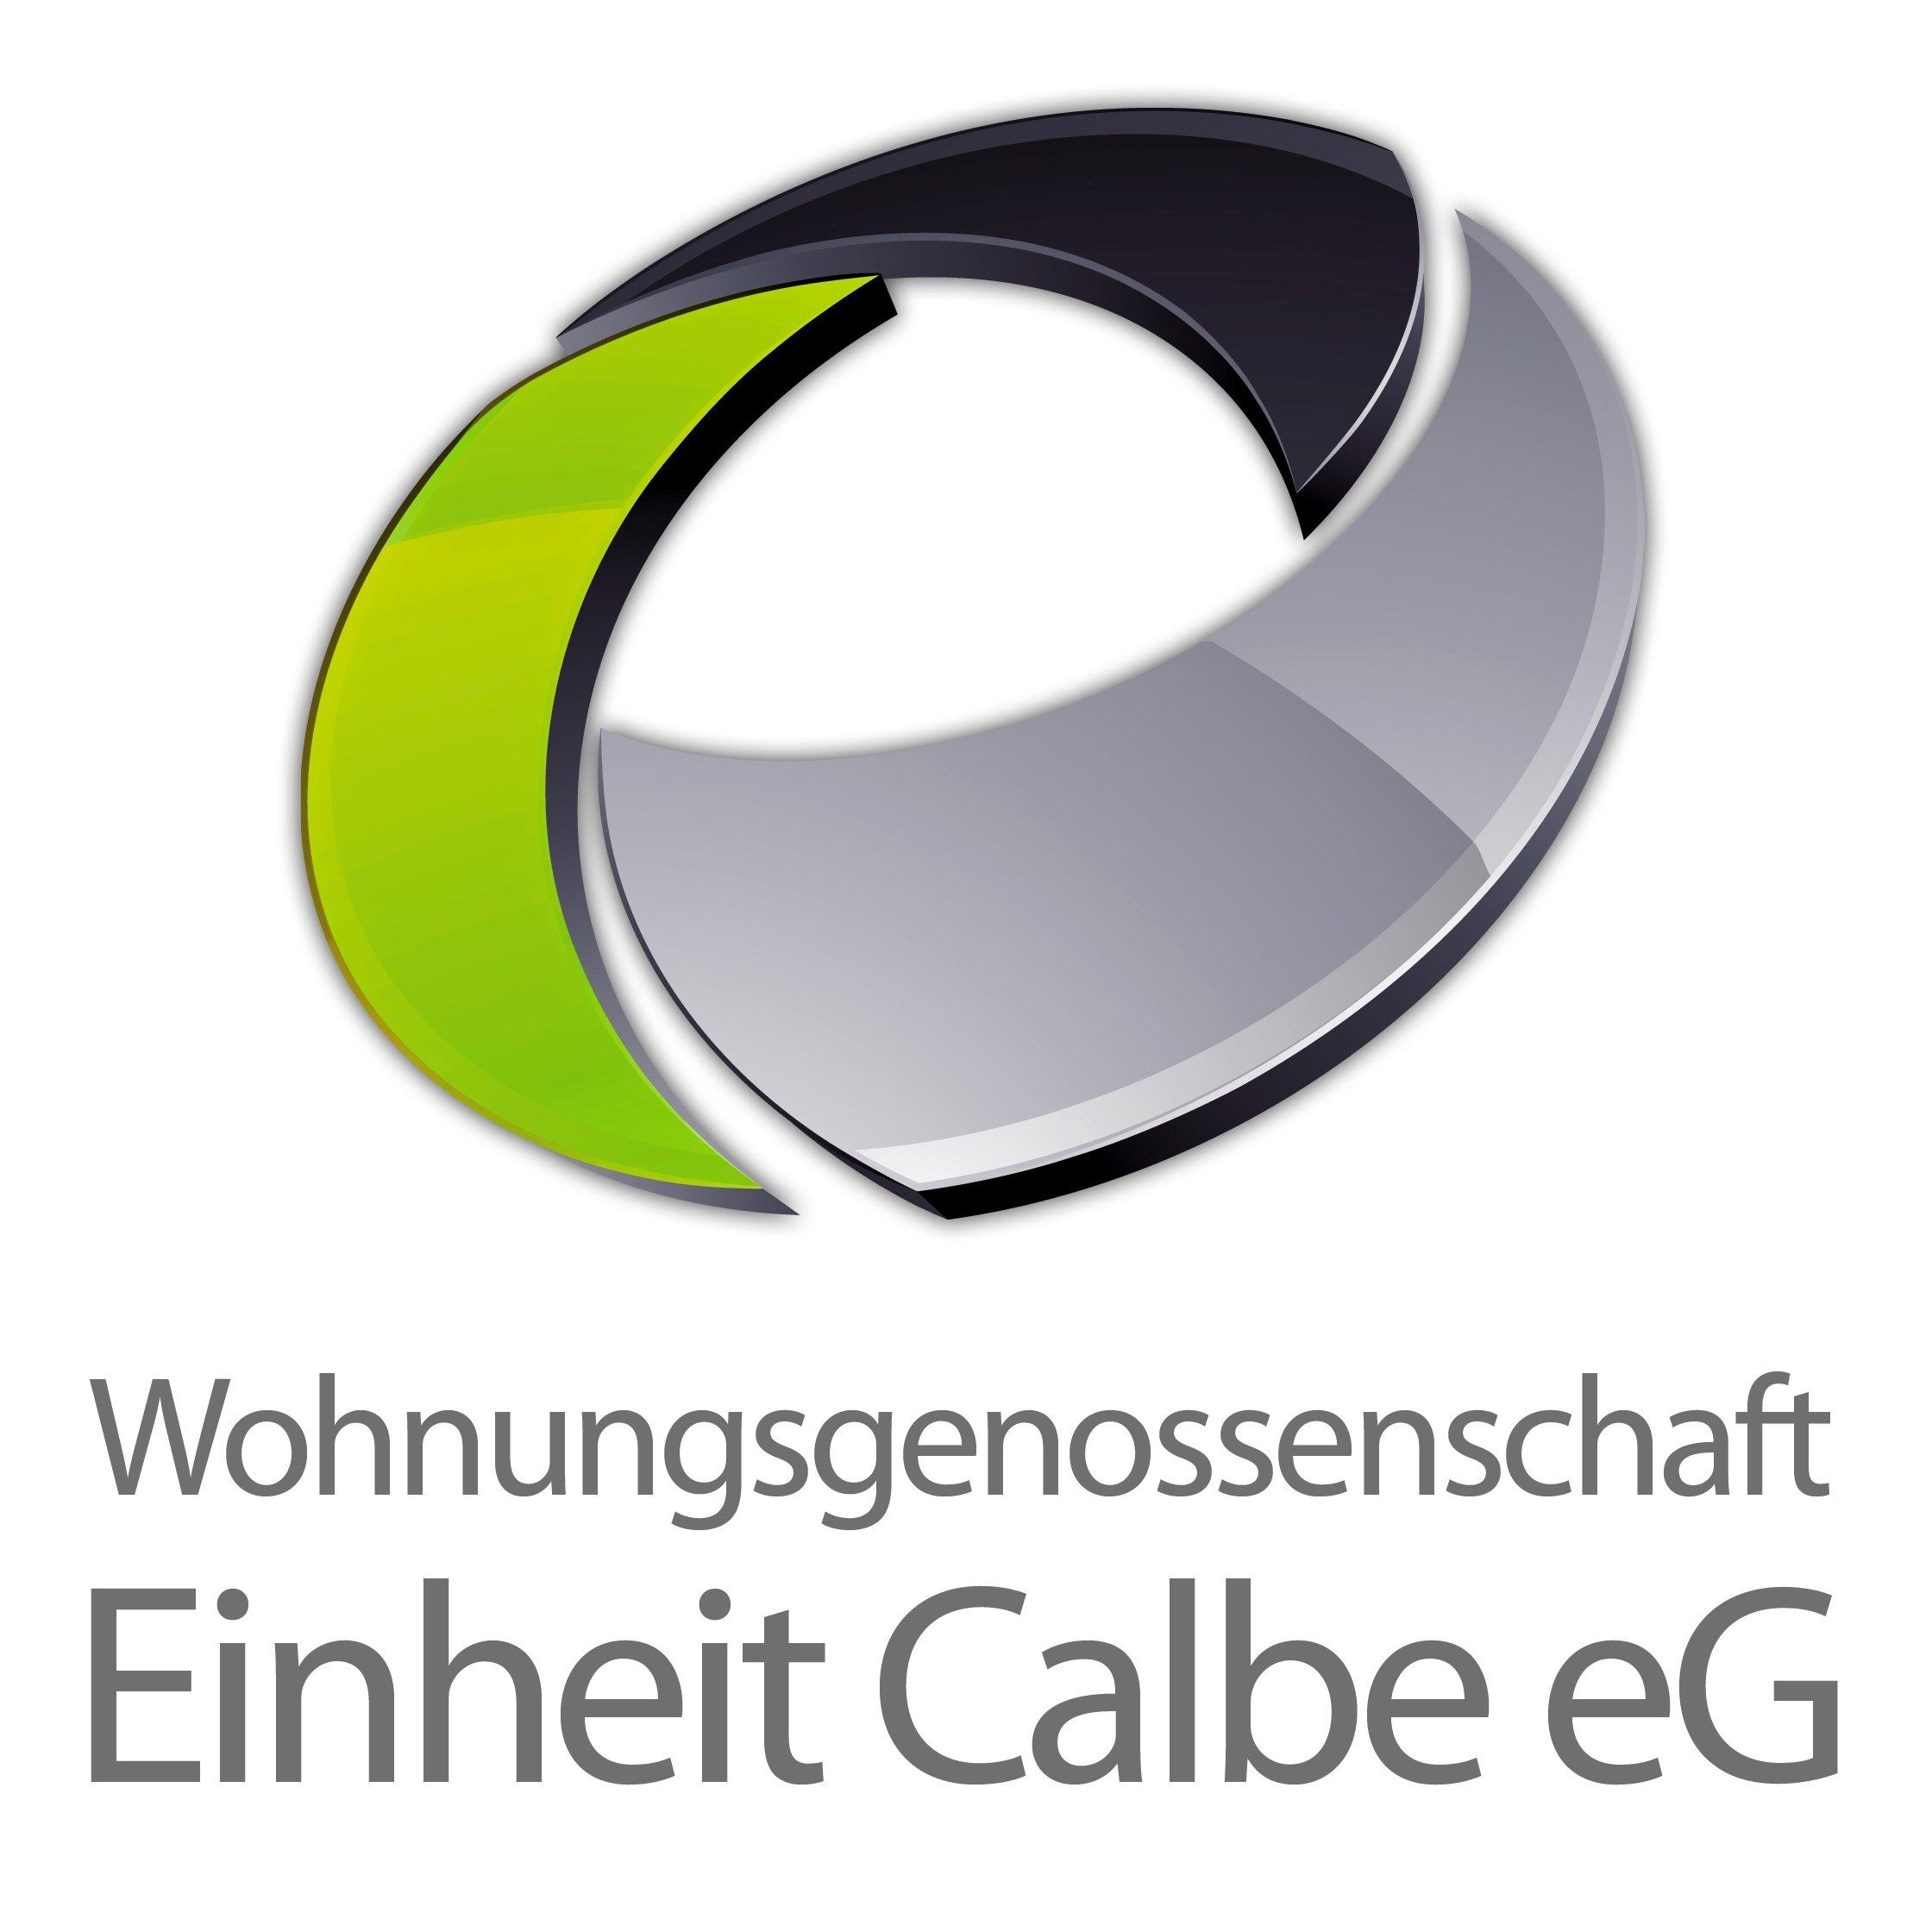 Wohnungsgenossenschaft Einheit Calbe eG Logo